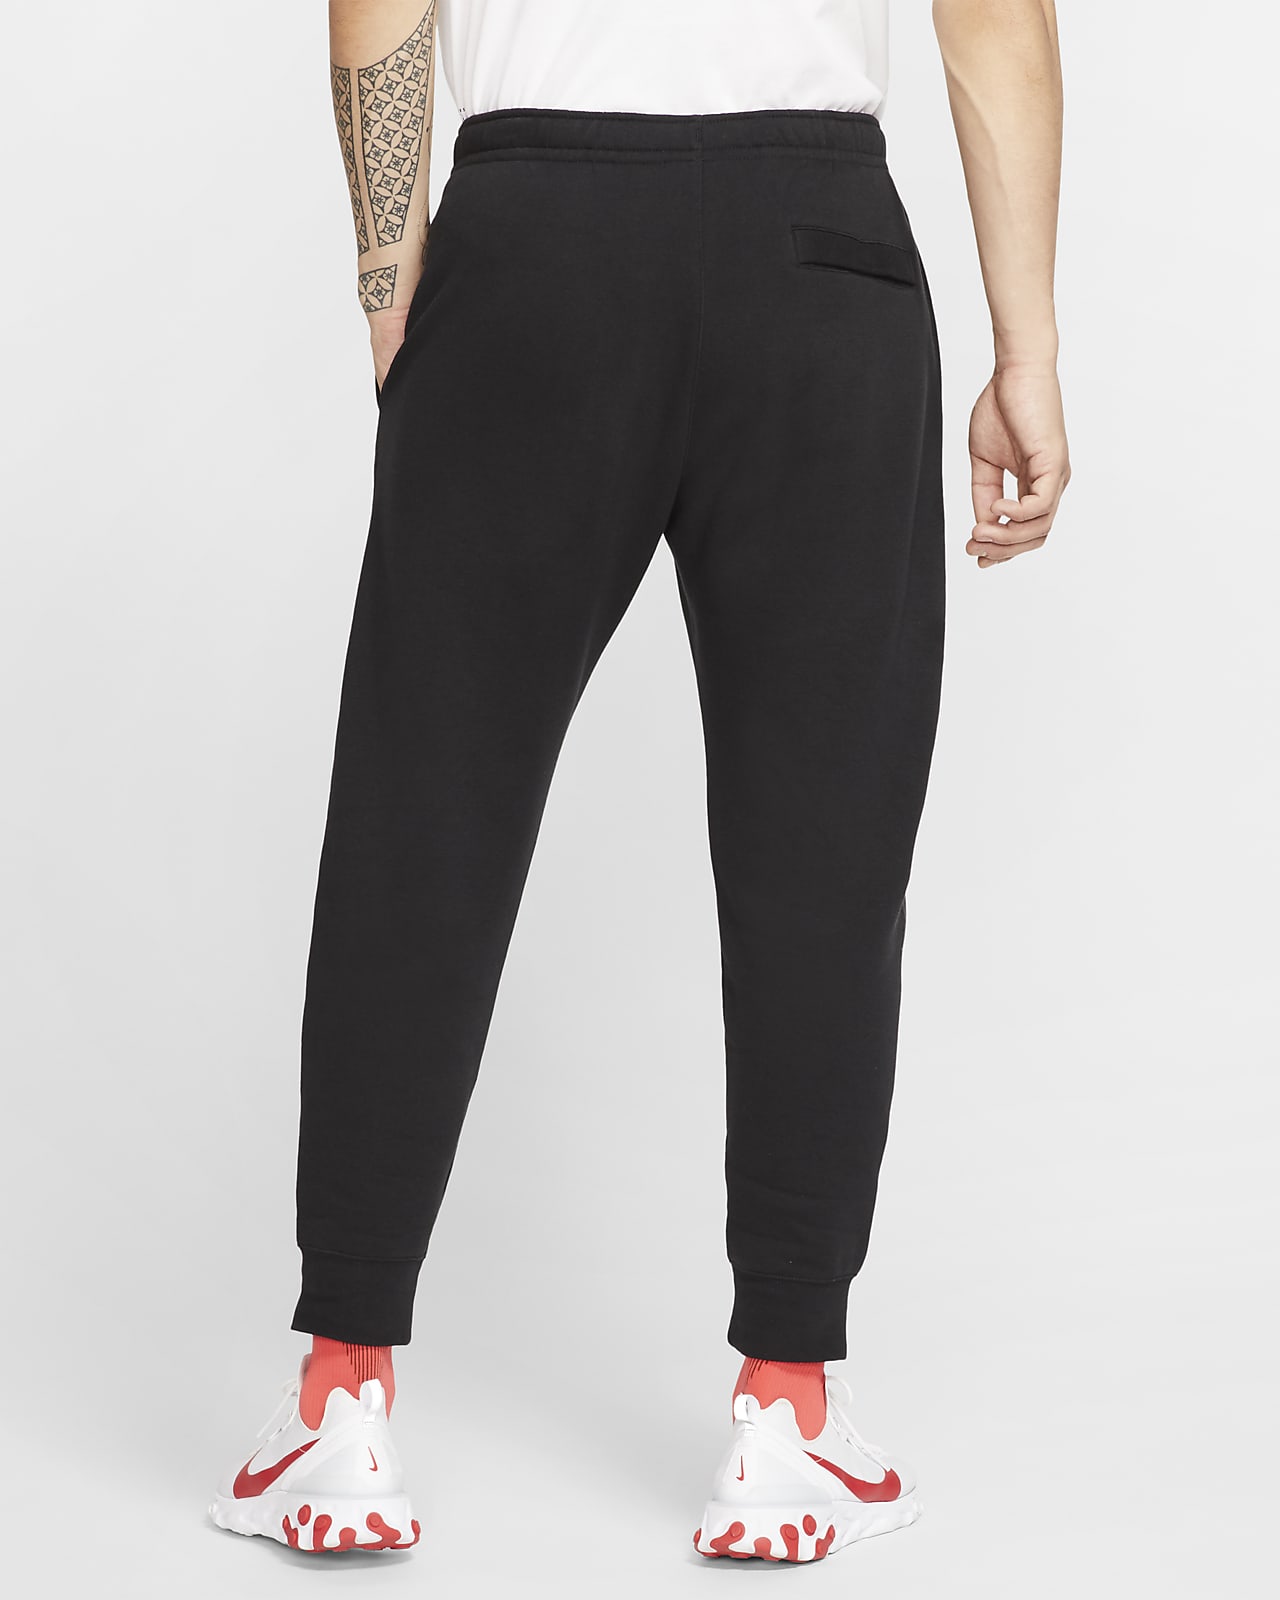 Nike x Stüssy Fleece Pants in Black | Voo Store Berlin | Worldwide Shipping